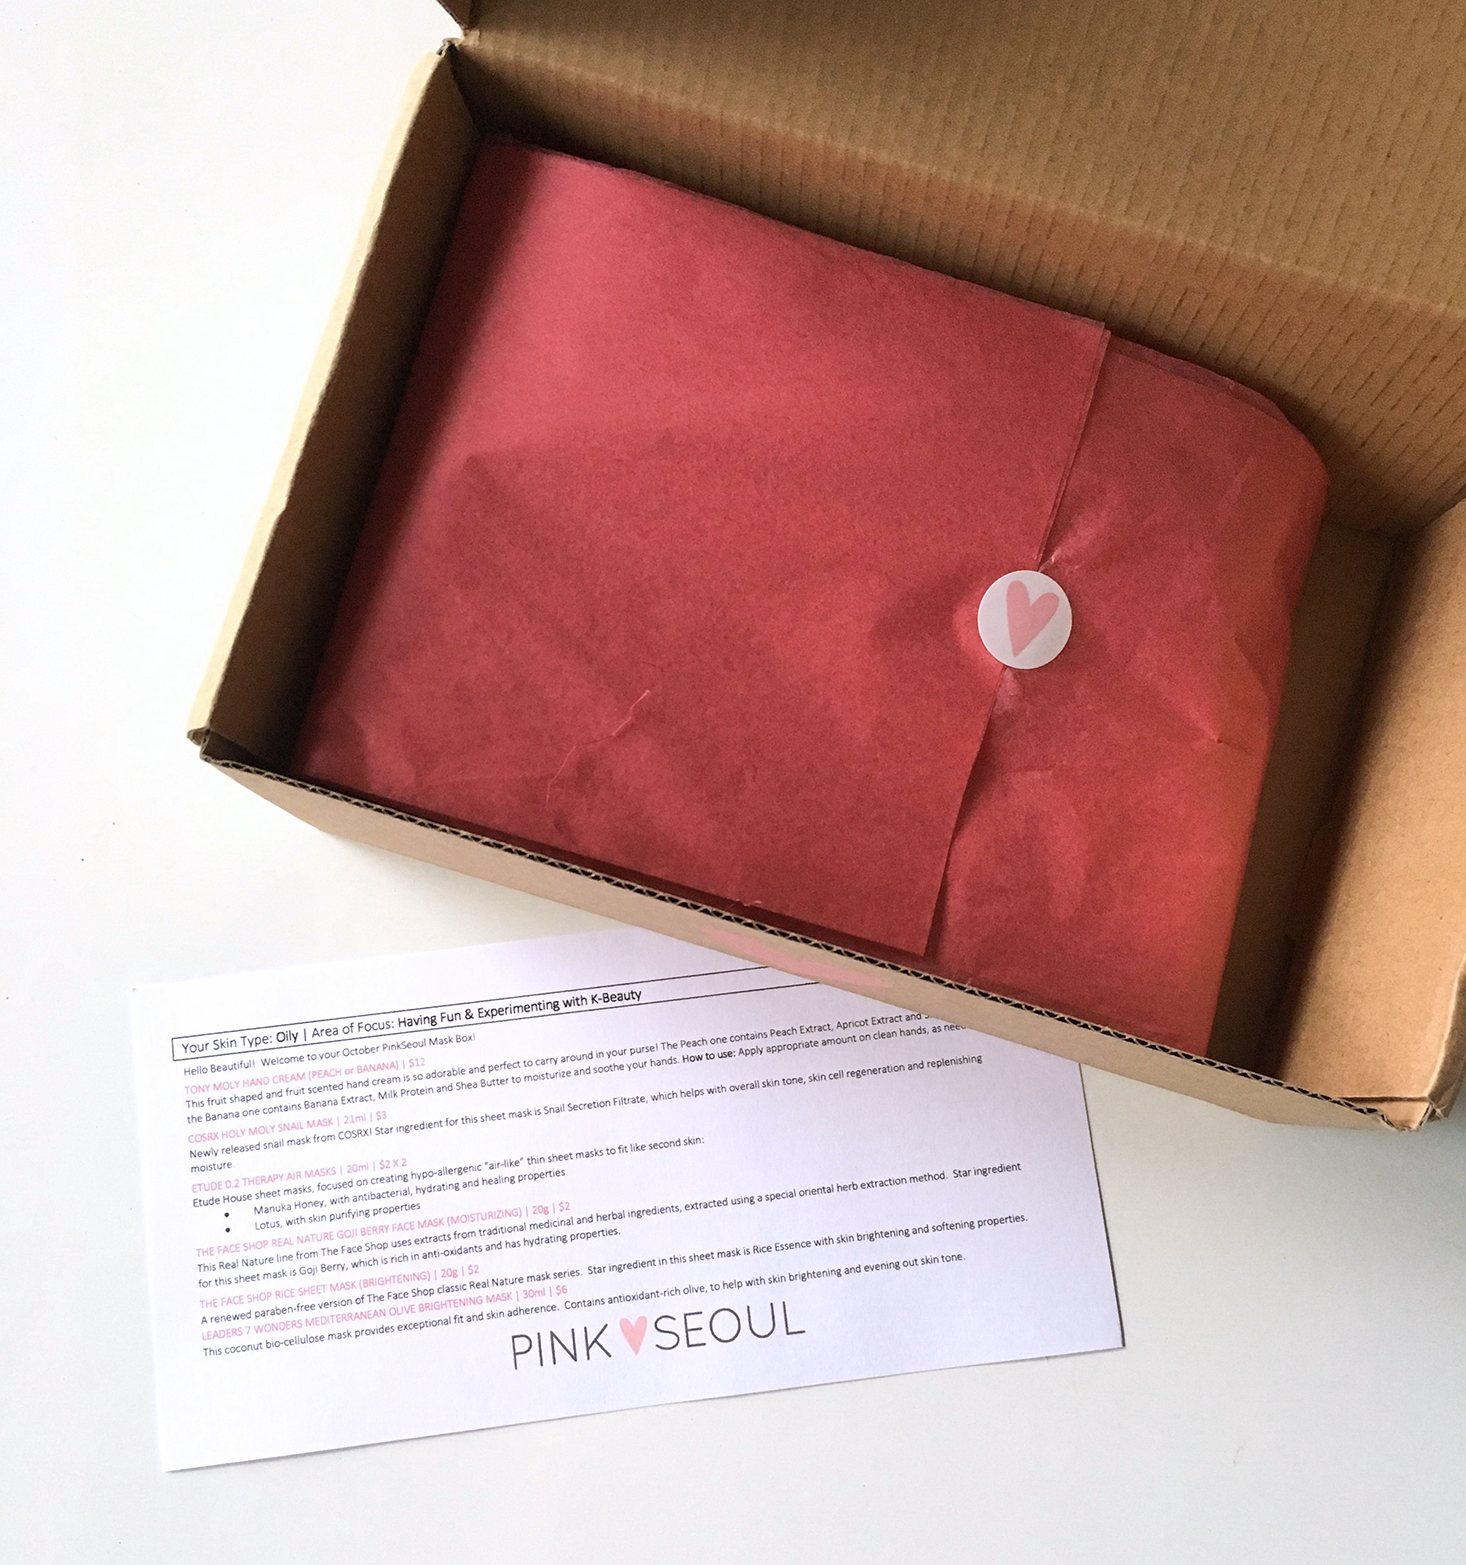 pinkseoul-mask-box-october-2016-box-opened